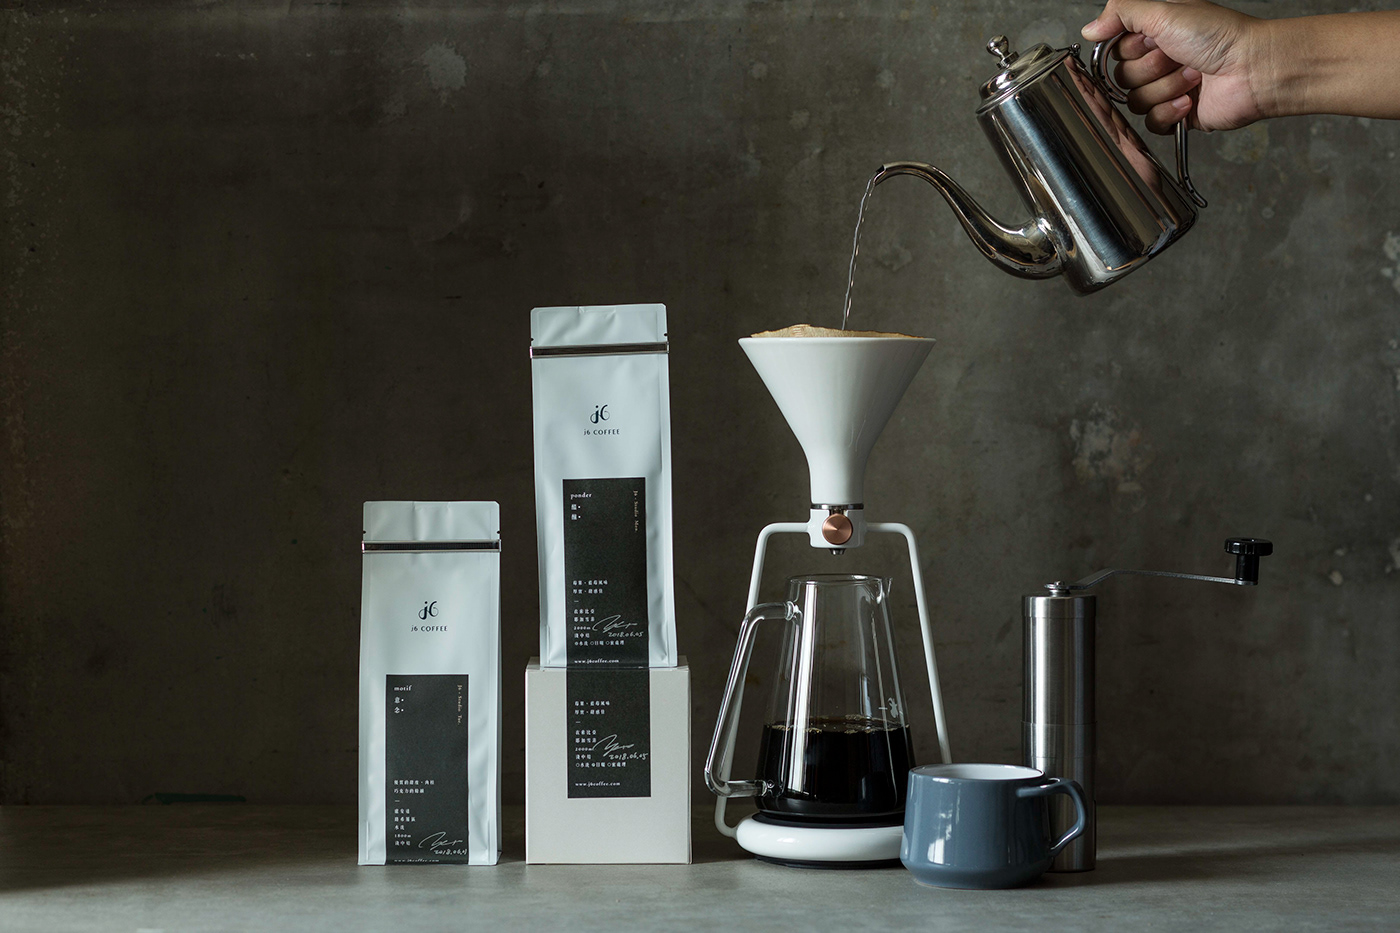 Coffee branding  logo ponder motif move blend beams ease package